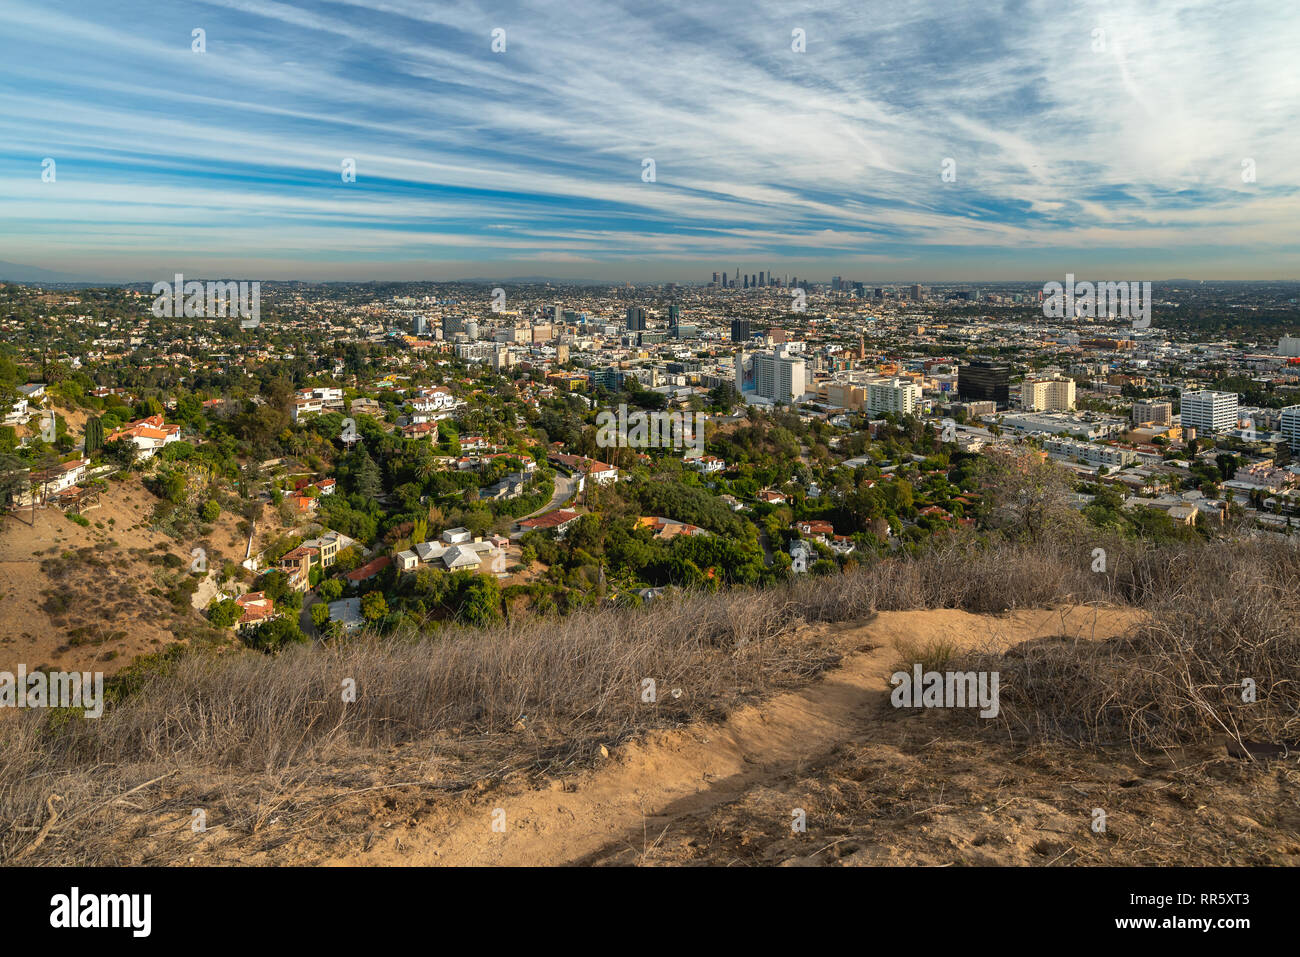 Hollywood Hills y el centro de Los Angeles, vista desde Runyon Canyon Park, 27 de noviembre de 2018 Foto de stock